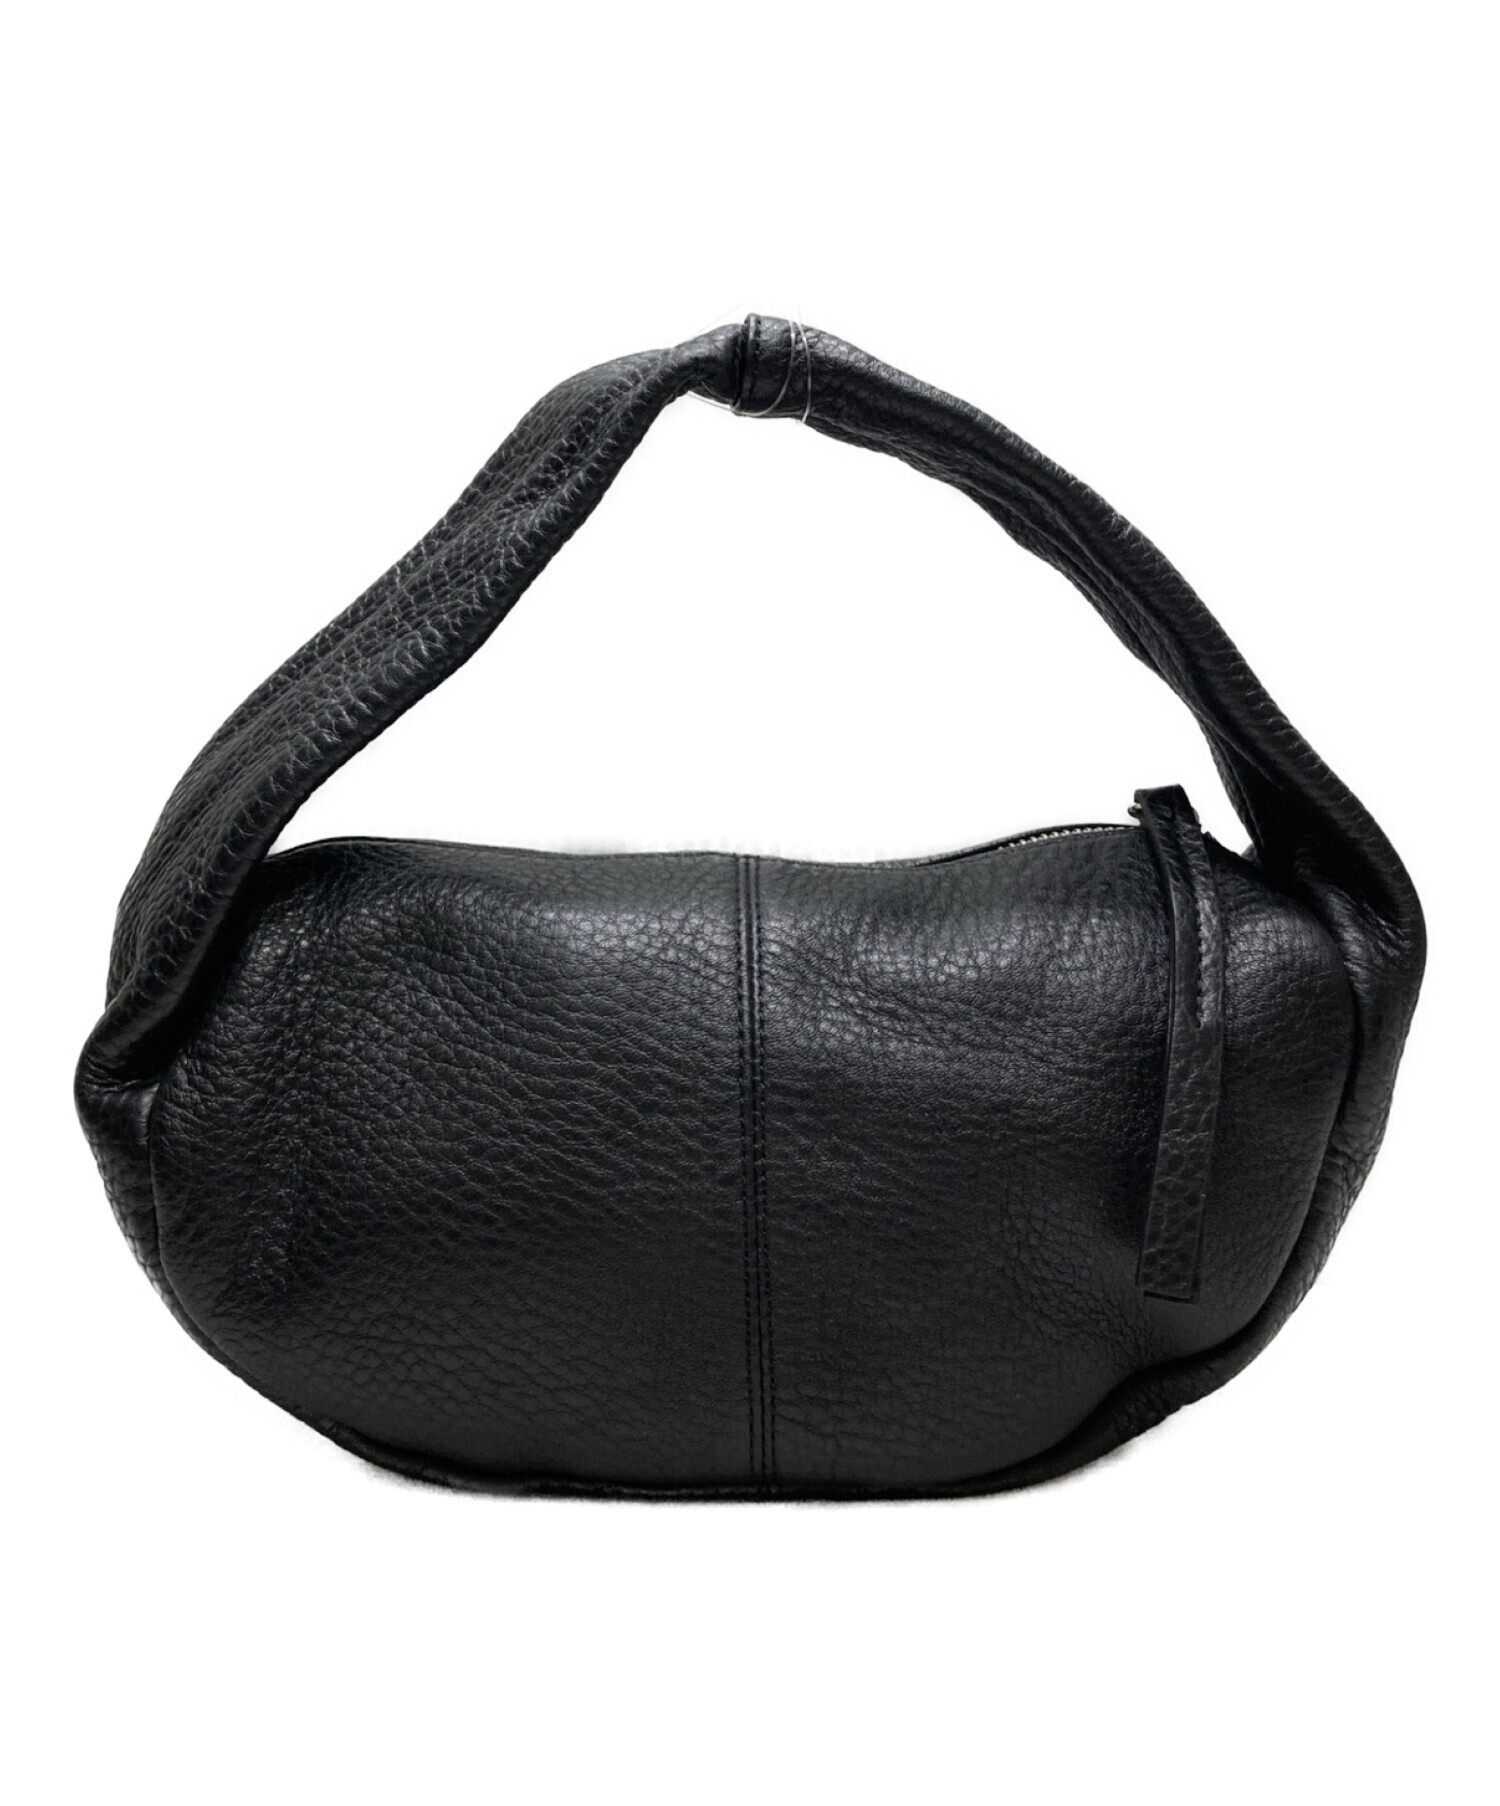 ブラックは完売してますTODAYFUL Leather Wrap Bag black - ハンドバッグ